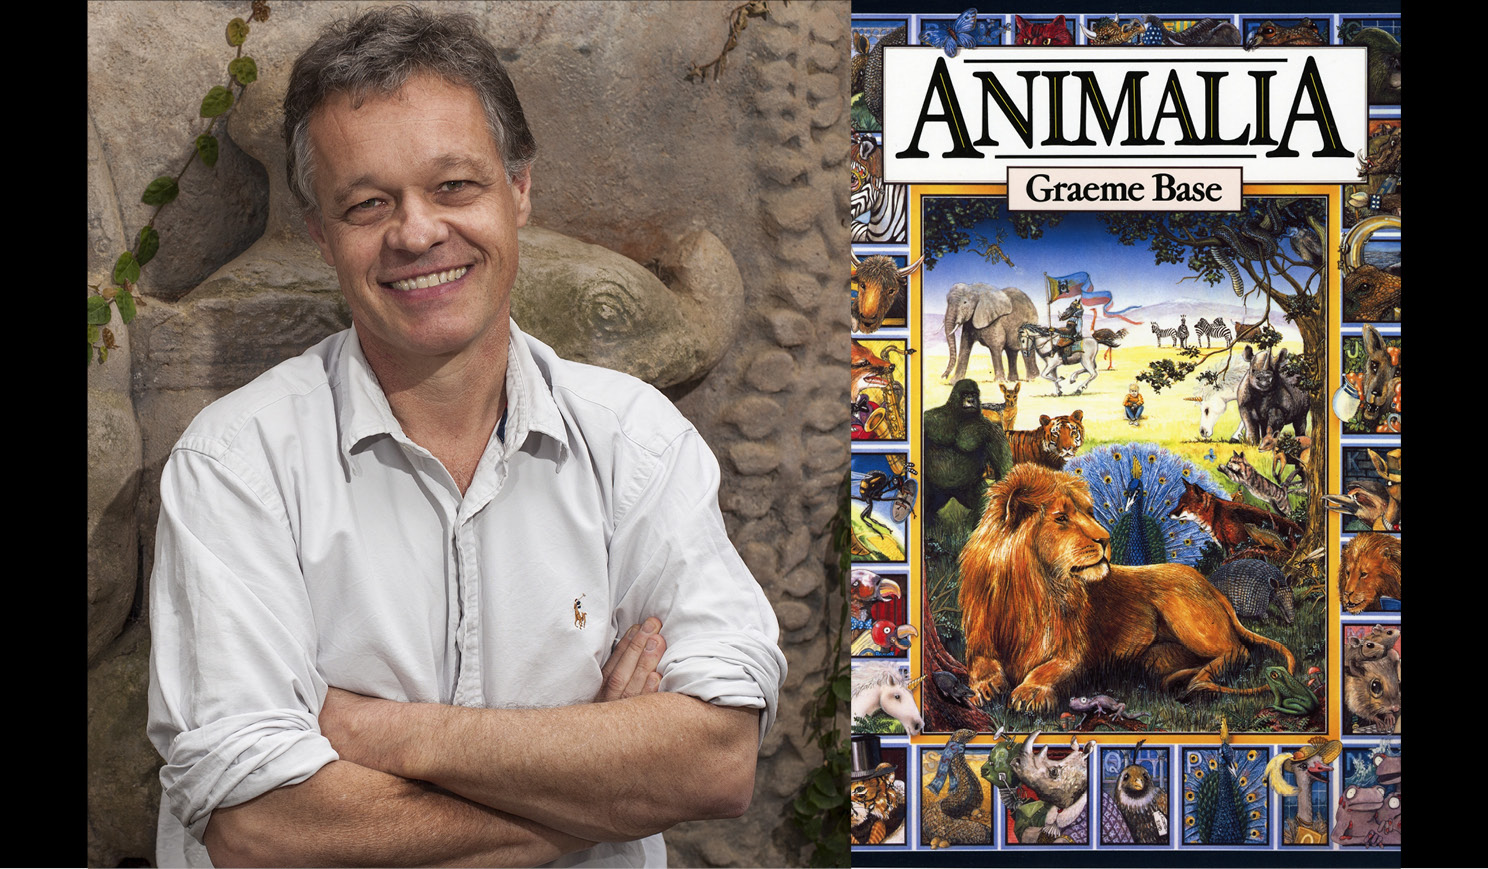 Graeme Base's headhsot alongside the cover of his bestseller Animalia